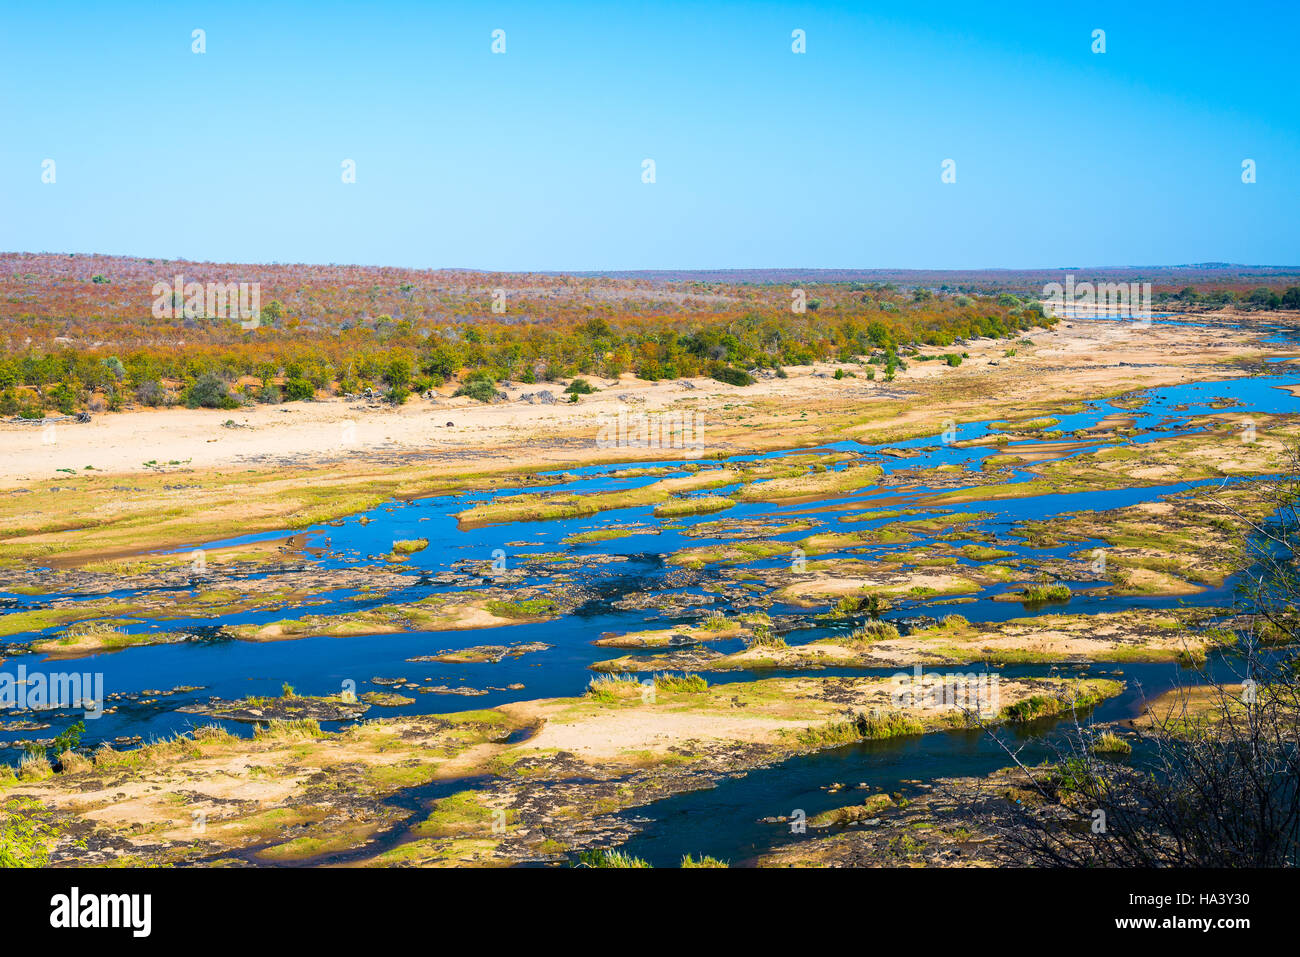 Olifants River, scenic et paysage coloré avec la faune dans le Parc National Kruger, célèbre destination de voyage en Afrique du Sud. Ciel bleu clair. Banque D'Images